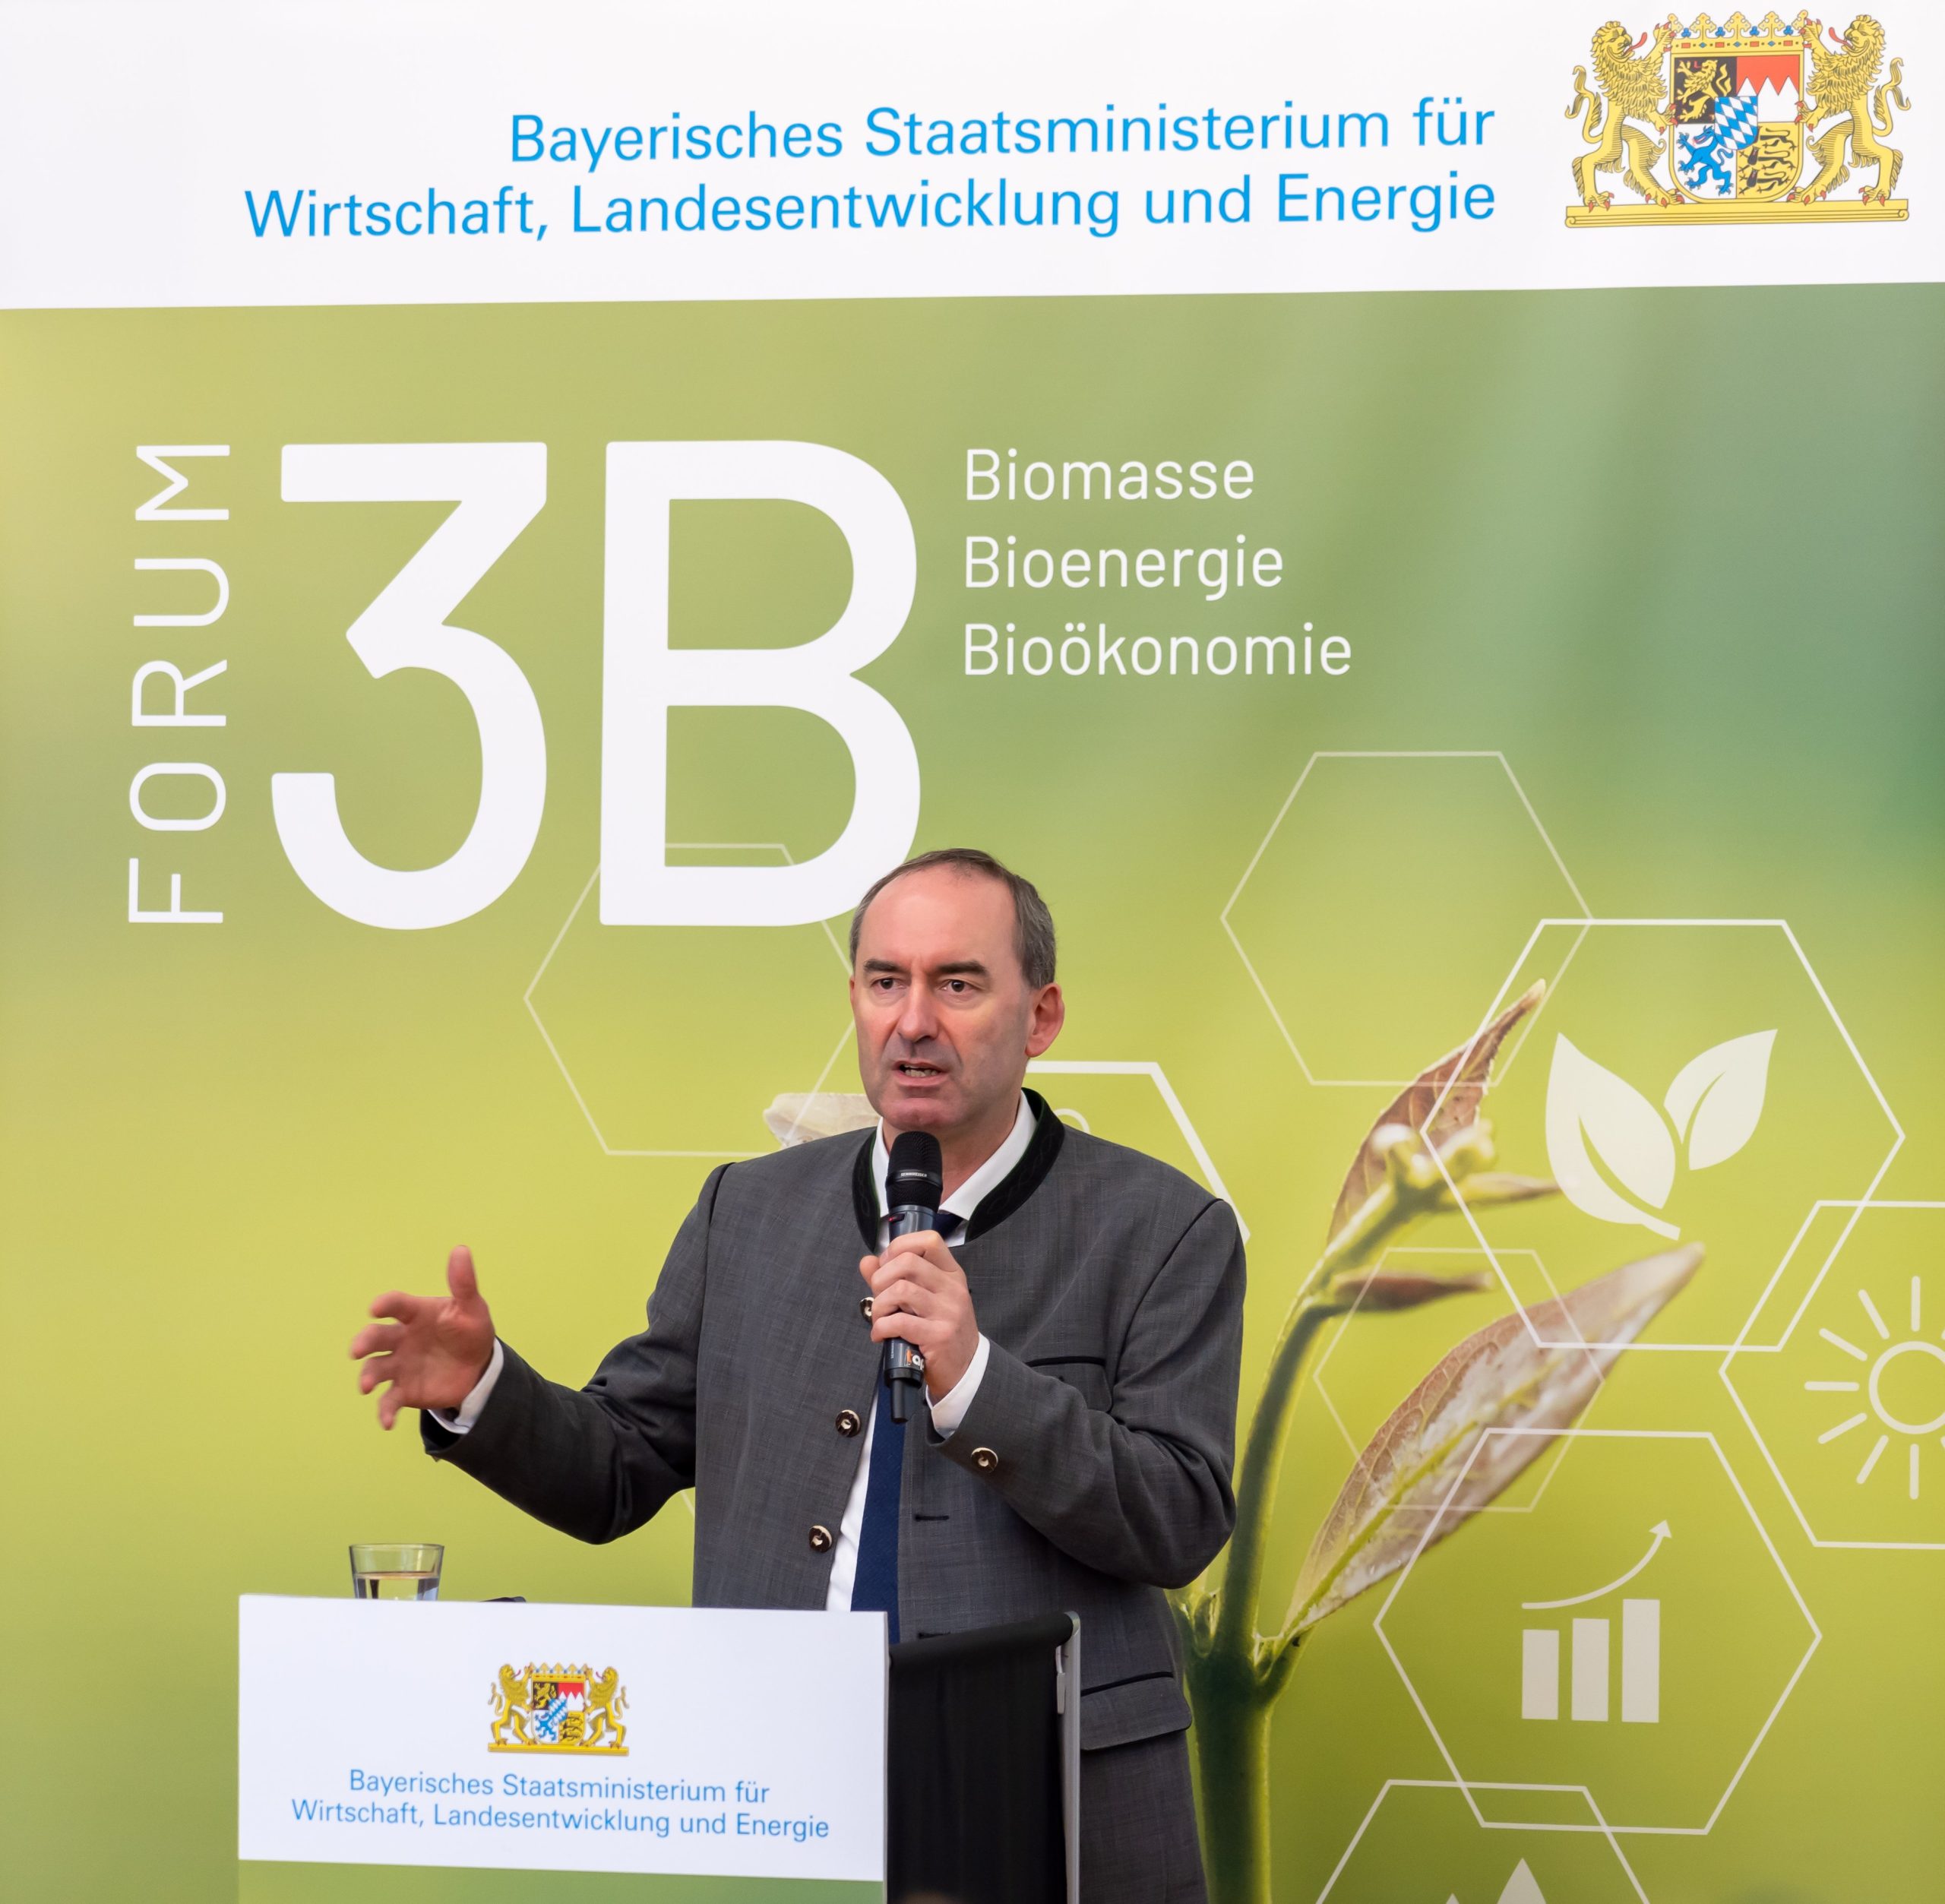 Forum 3B vernetzt Biomasse-Unternehmen mit Landwirten